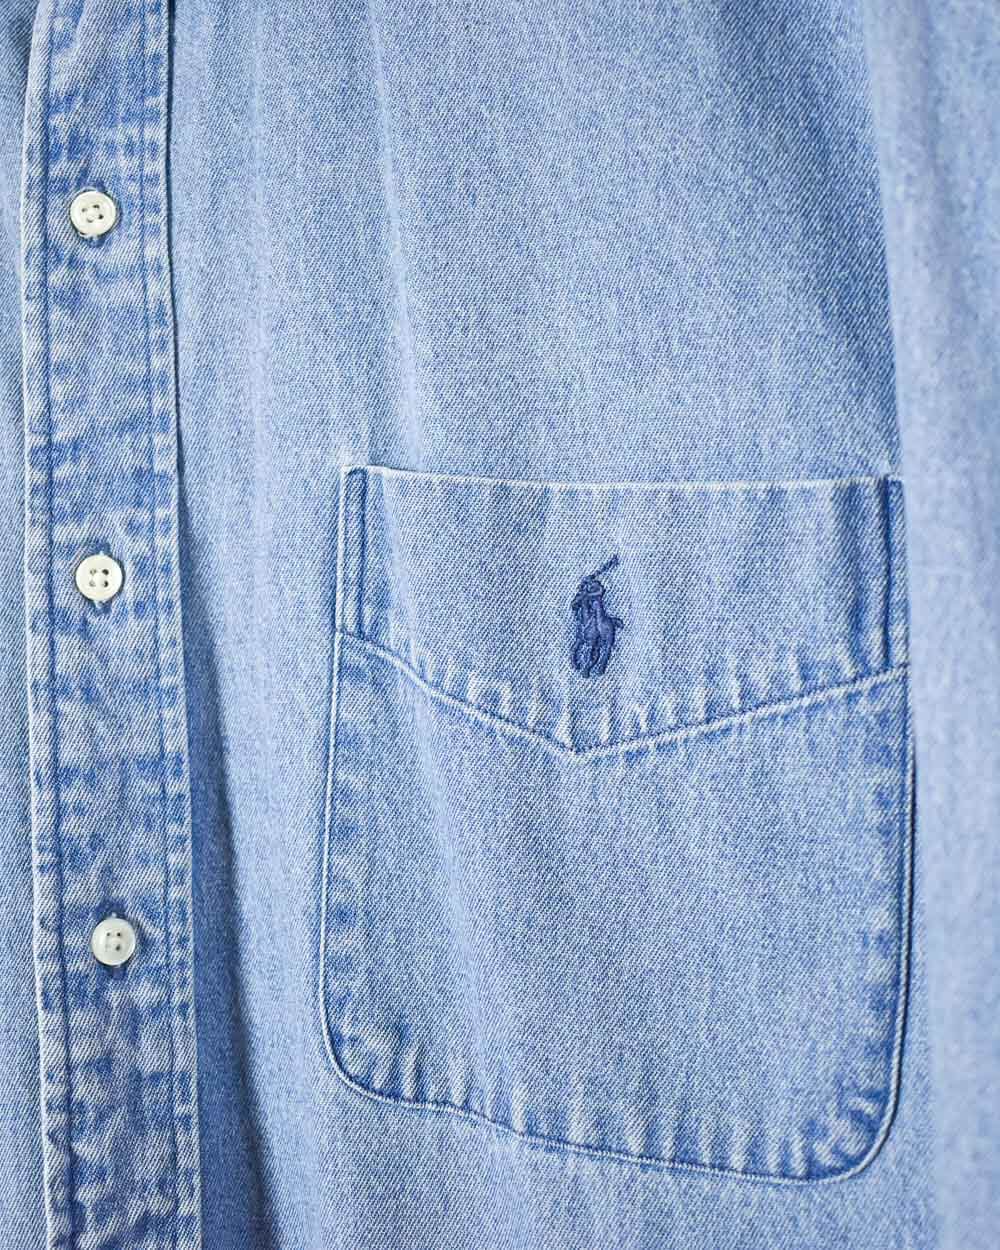 Blue Ralph Lauren Shirt - Large